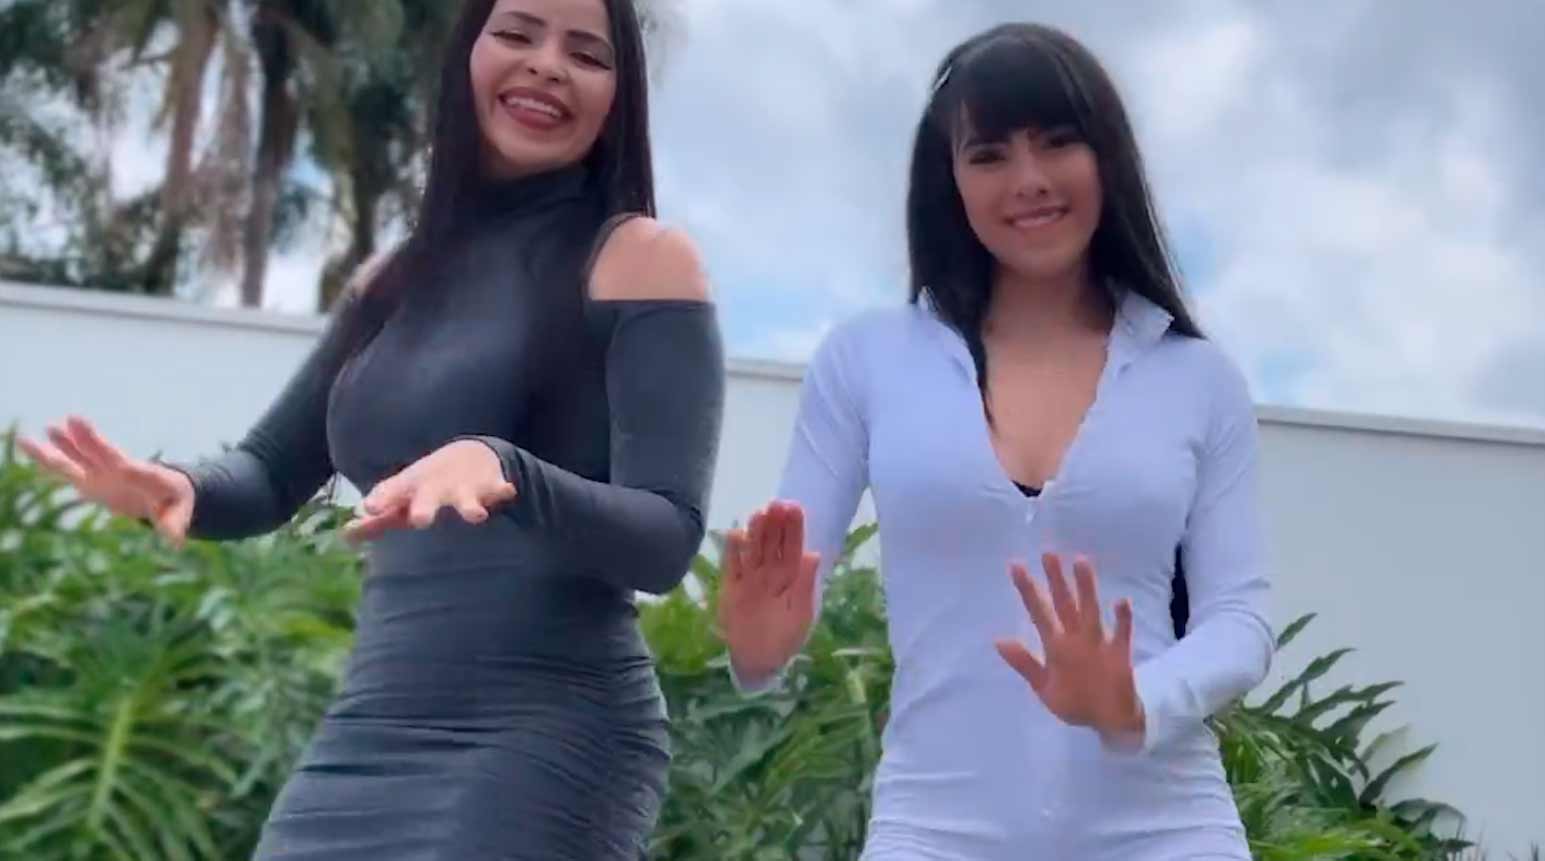 Video: Juliana Caetano und Nadila von Banda Djavu begeistern auf Instagram mit Tanz. Fotos und Video: Reproduktion Instagram @julianabondecasa